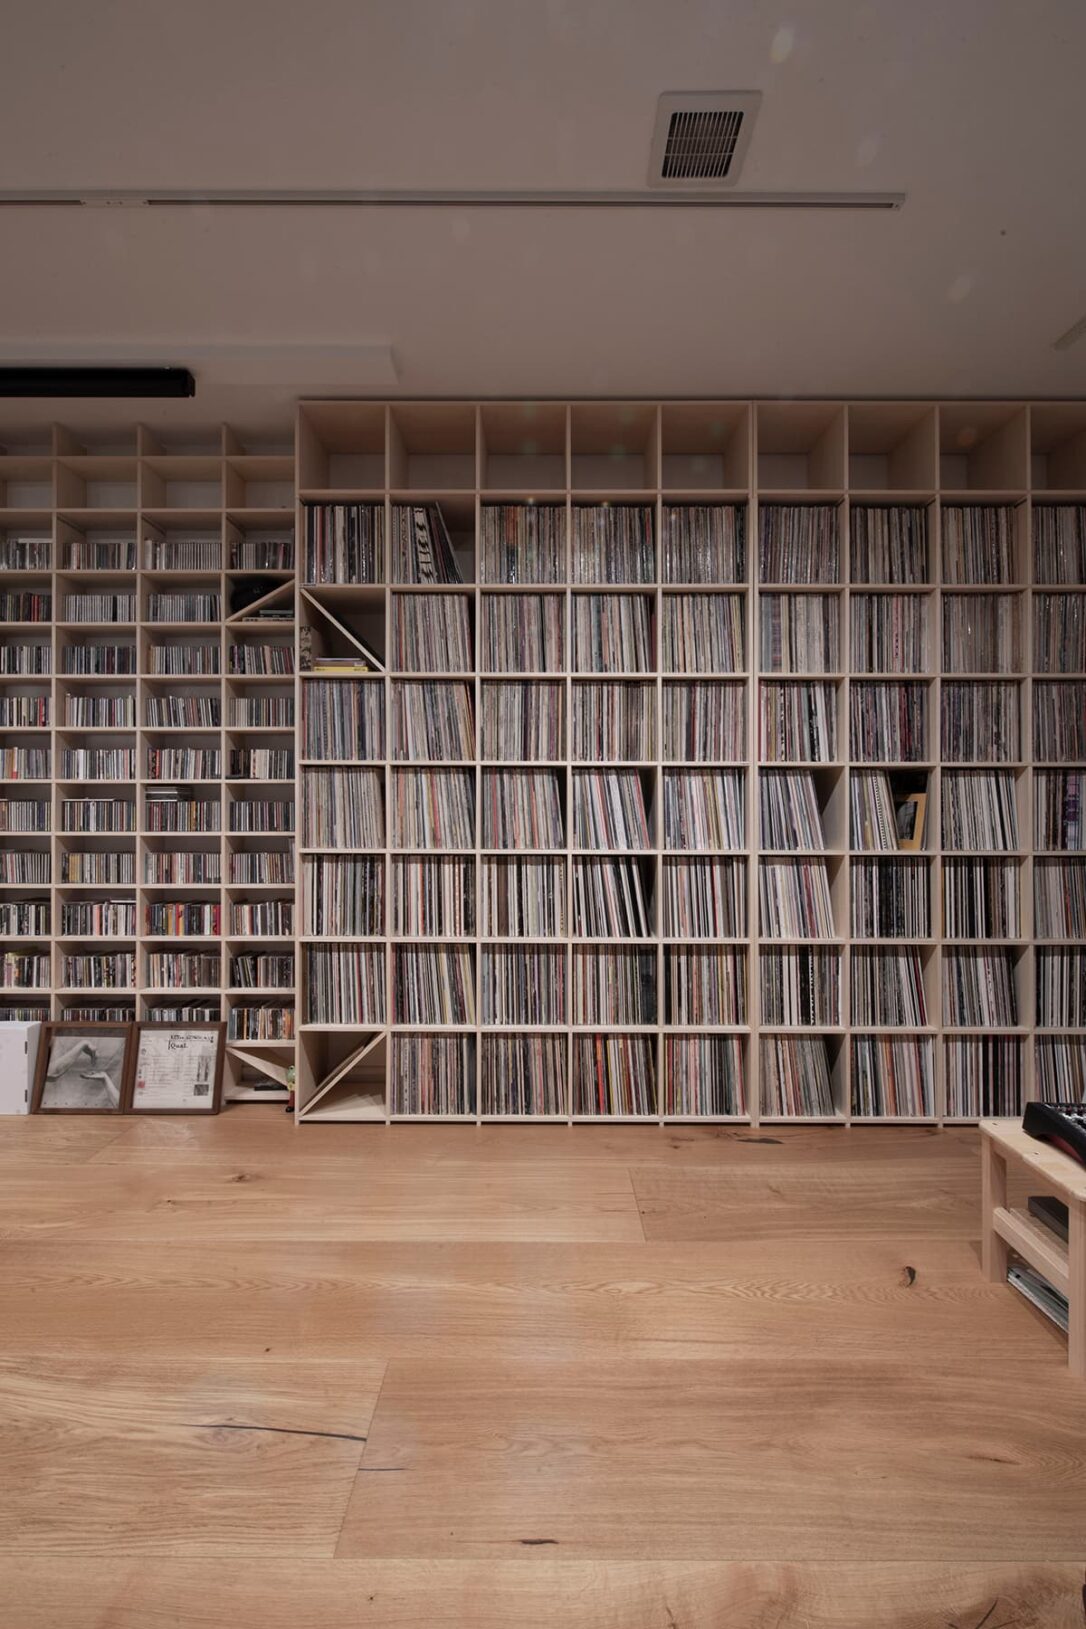 壁一面にレコード・CDを納めた壁面収納